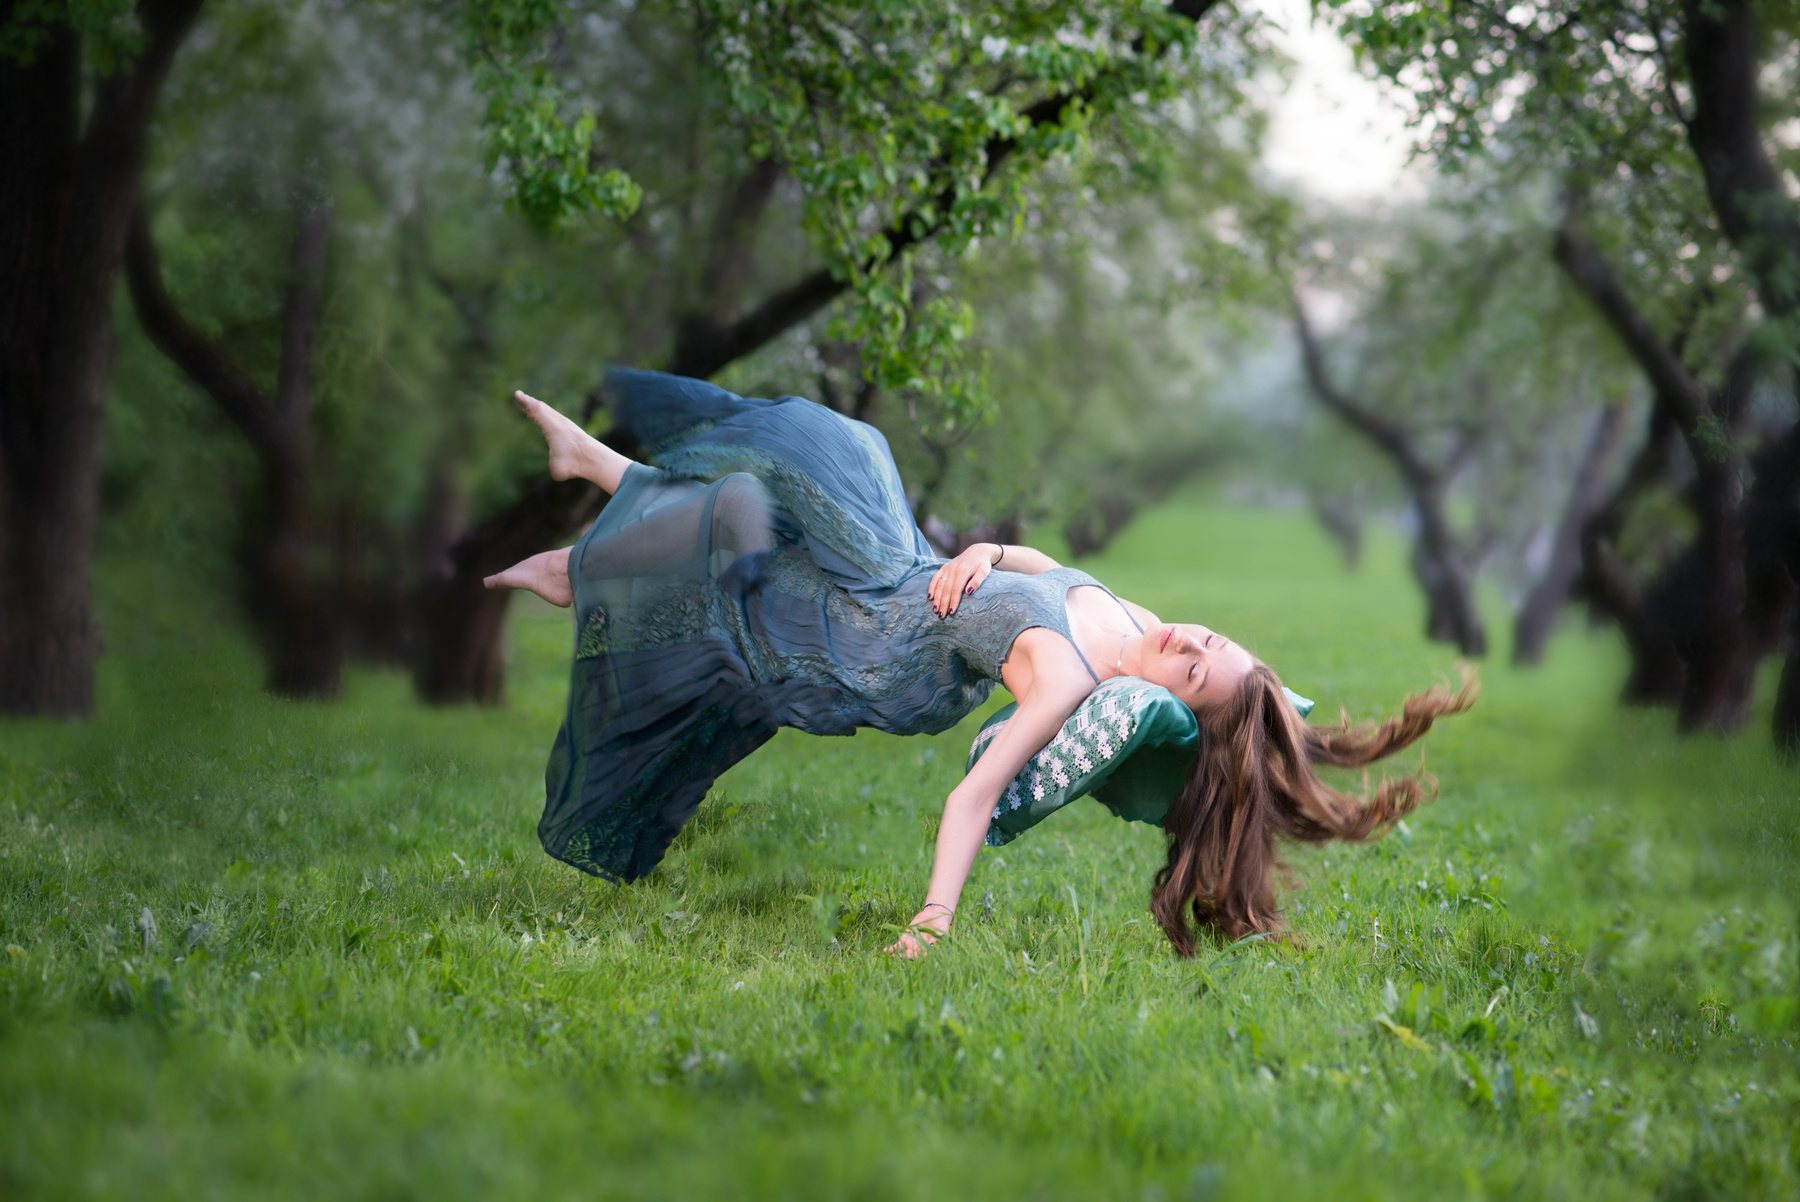 Gravity 2 цветы яблони левитация воздух зеленый трава полёт магия фея красота девушка